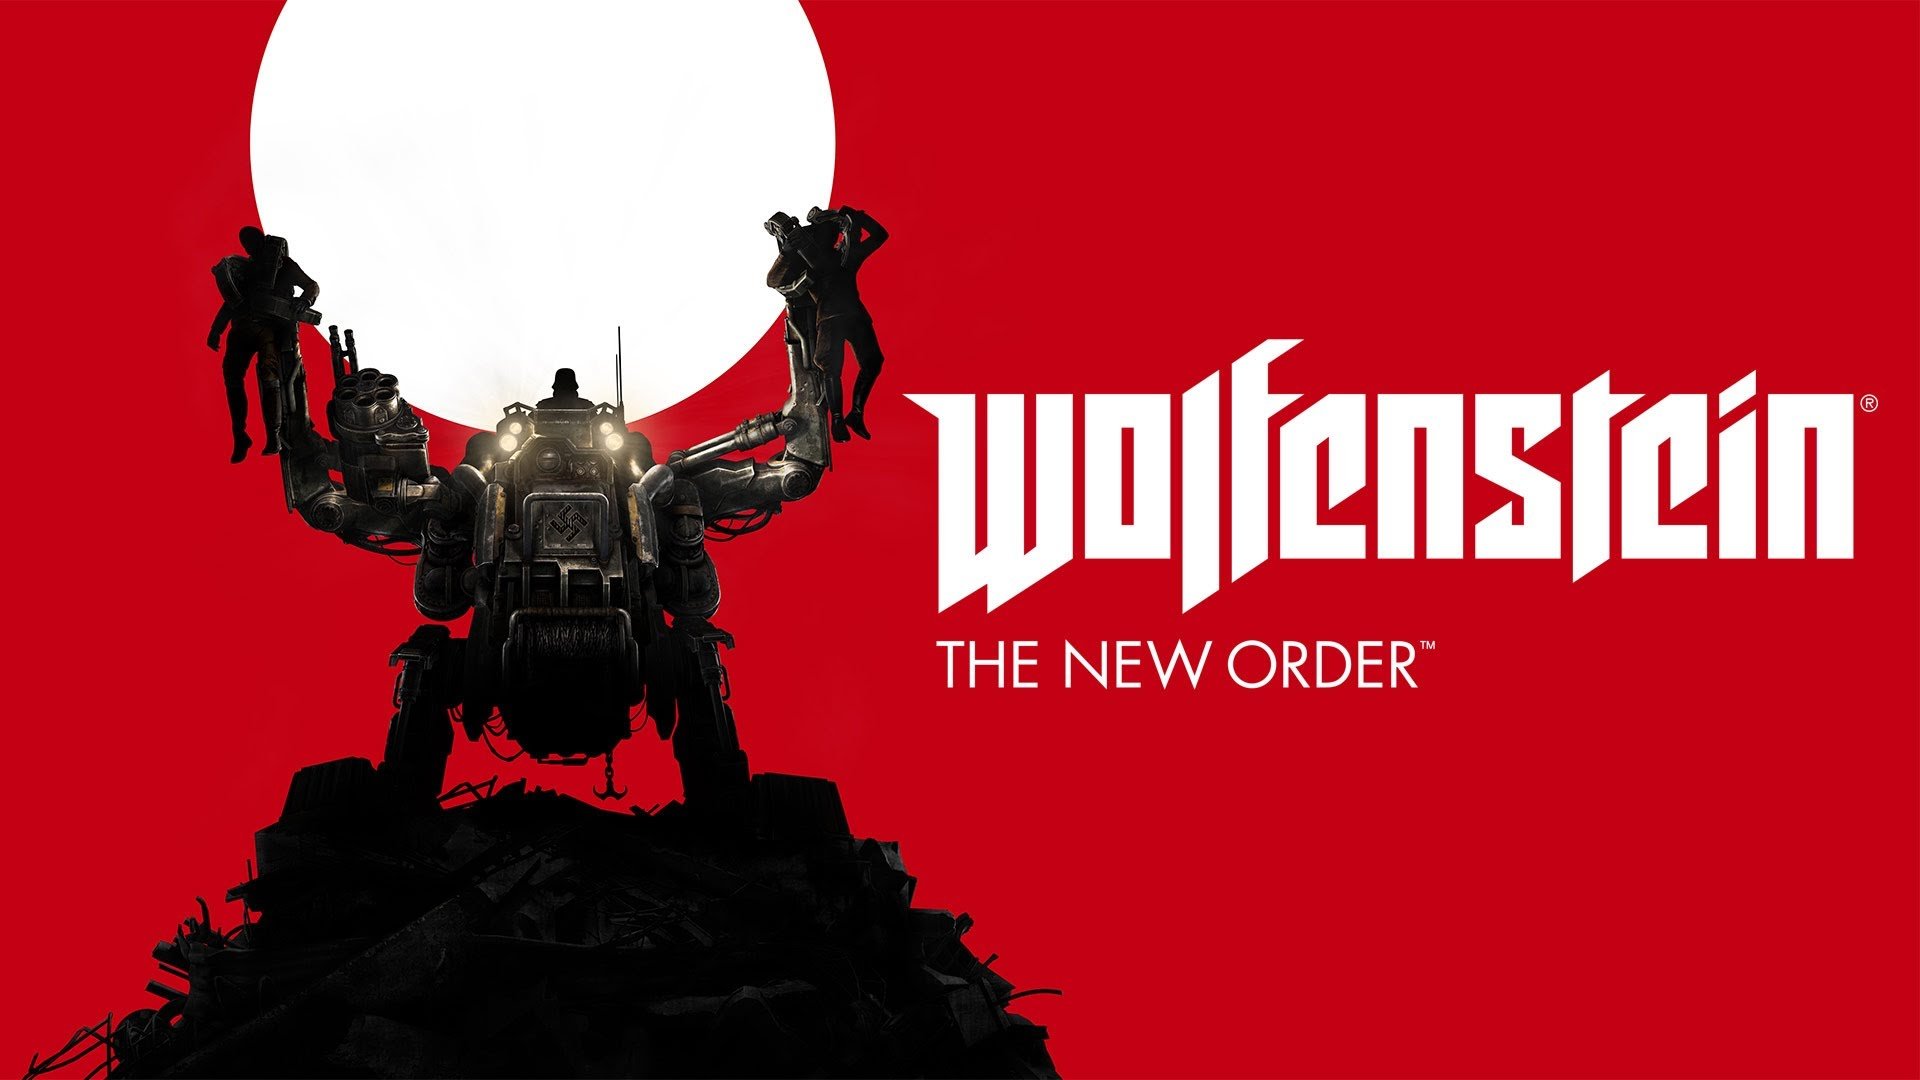 Wolfenstein - The New Order: Guide - Alle Enigma Codes auf einen